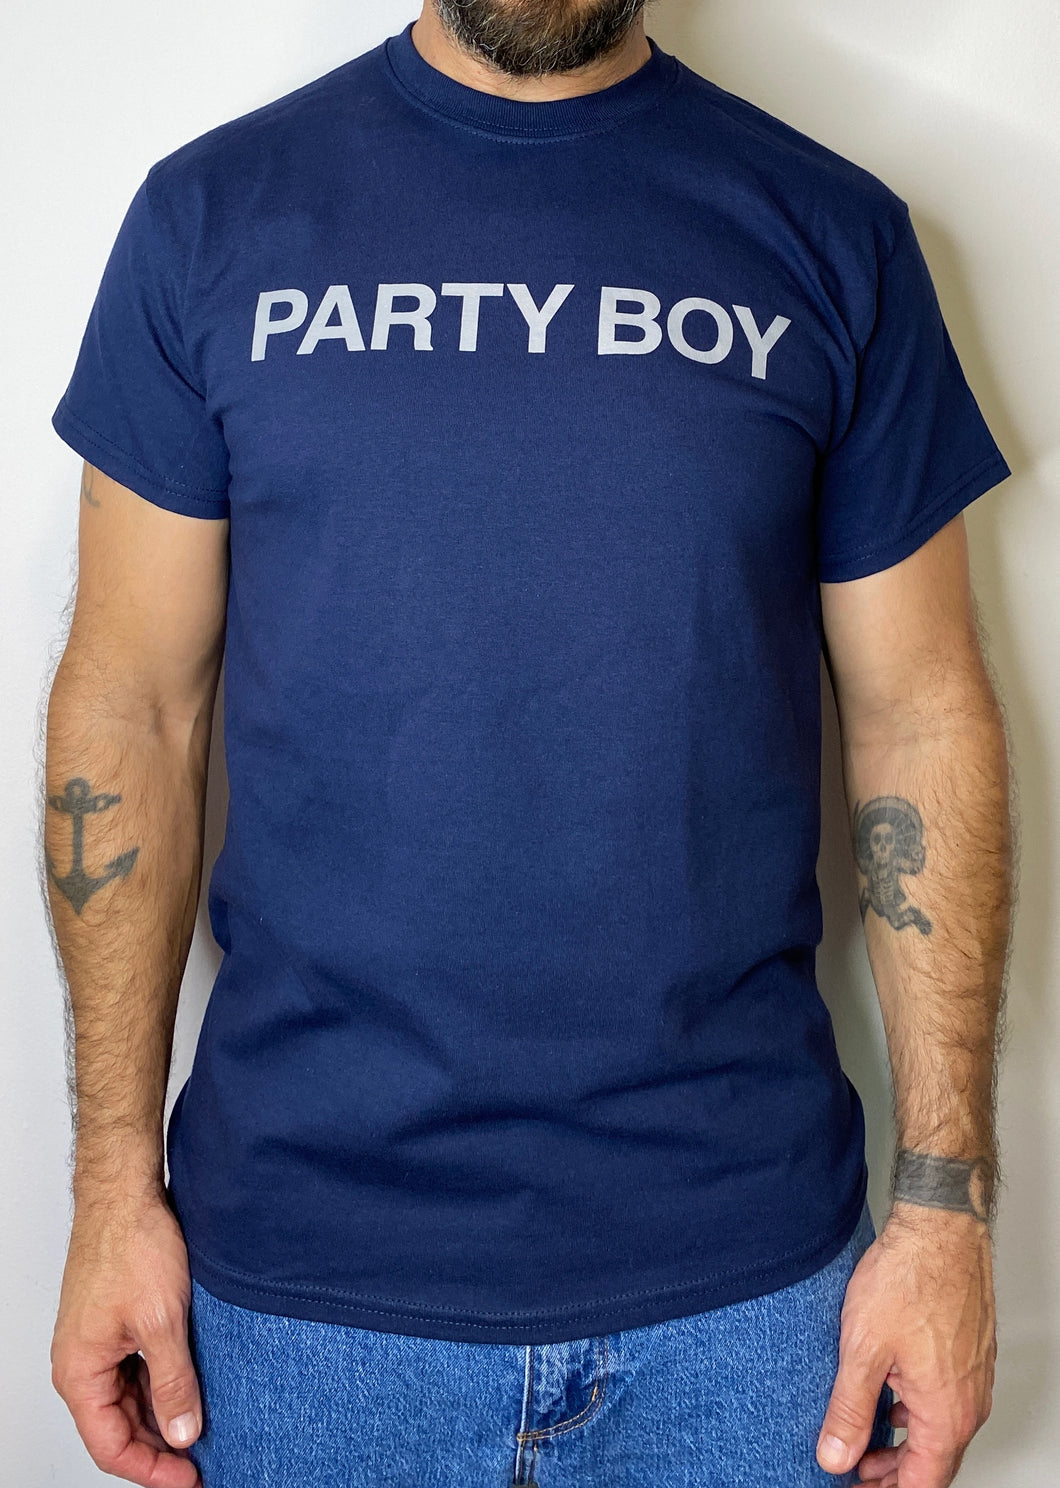 ¡NUEVO! Camiseta Party Boy NAVY